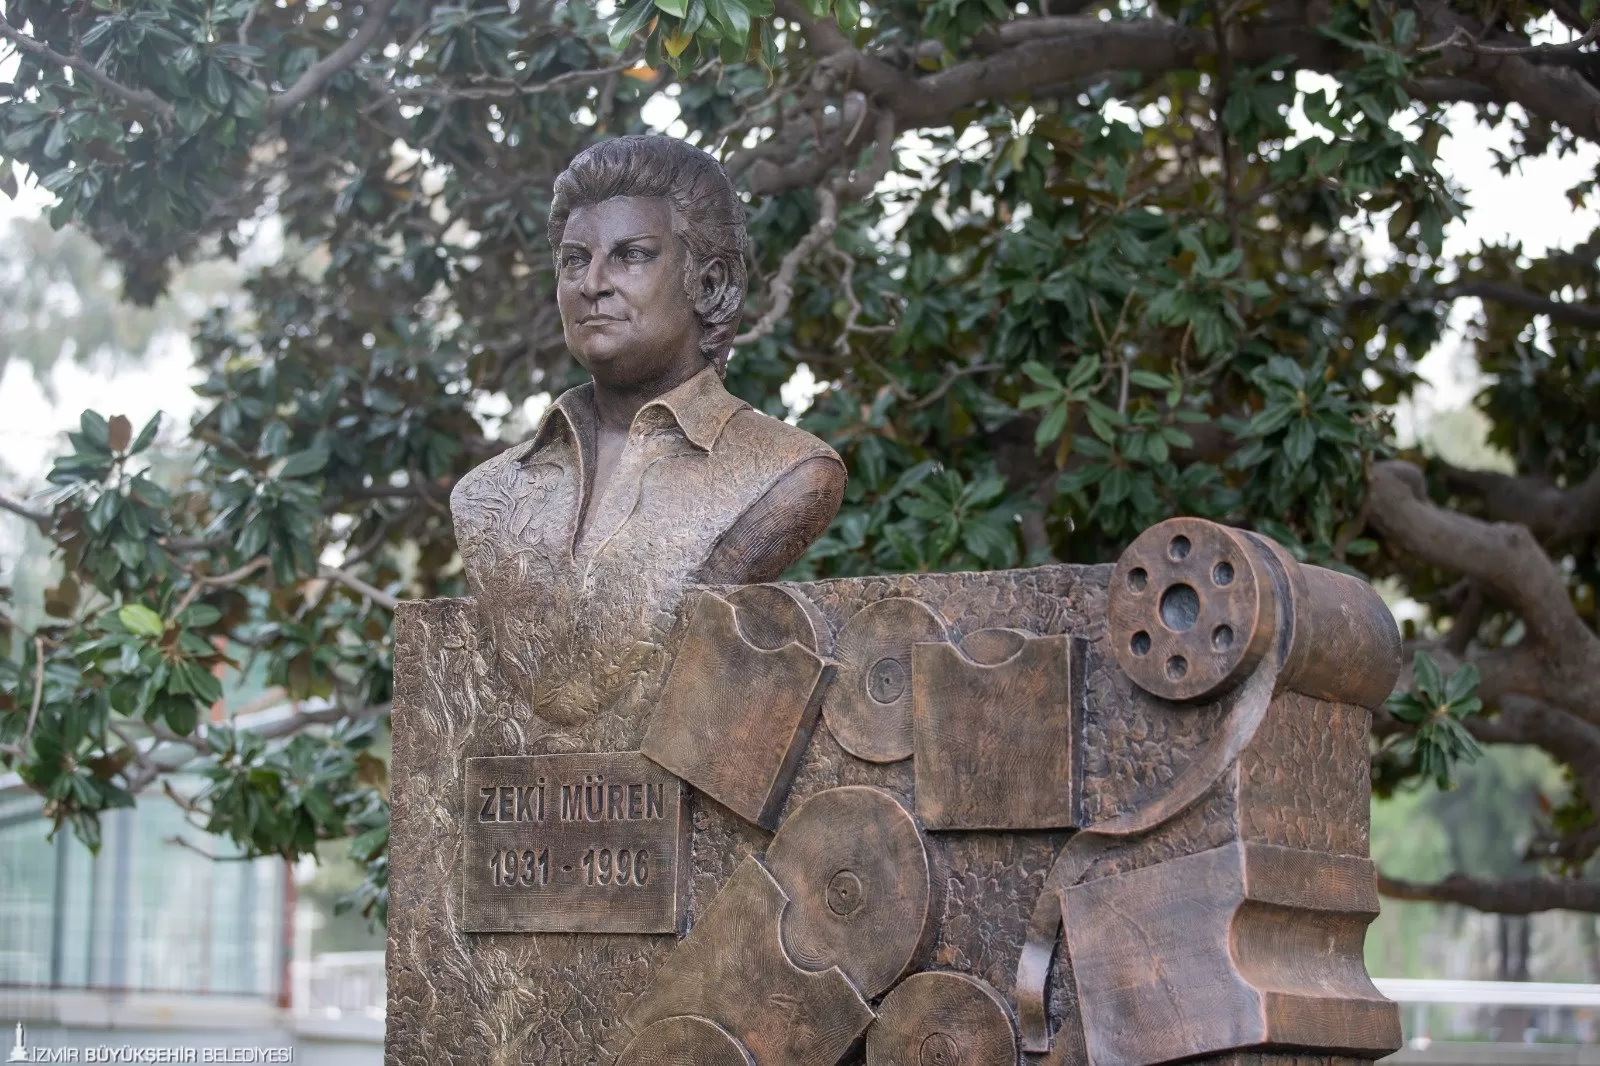 İzmir Büyükşehir Belediyesi, Türk Sanat Müziği'nin unutulmaz sesi Zeki Müren'in anısını yaşatmak için Kültürpark'ta heykelini dikti.